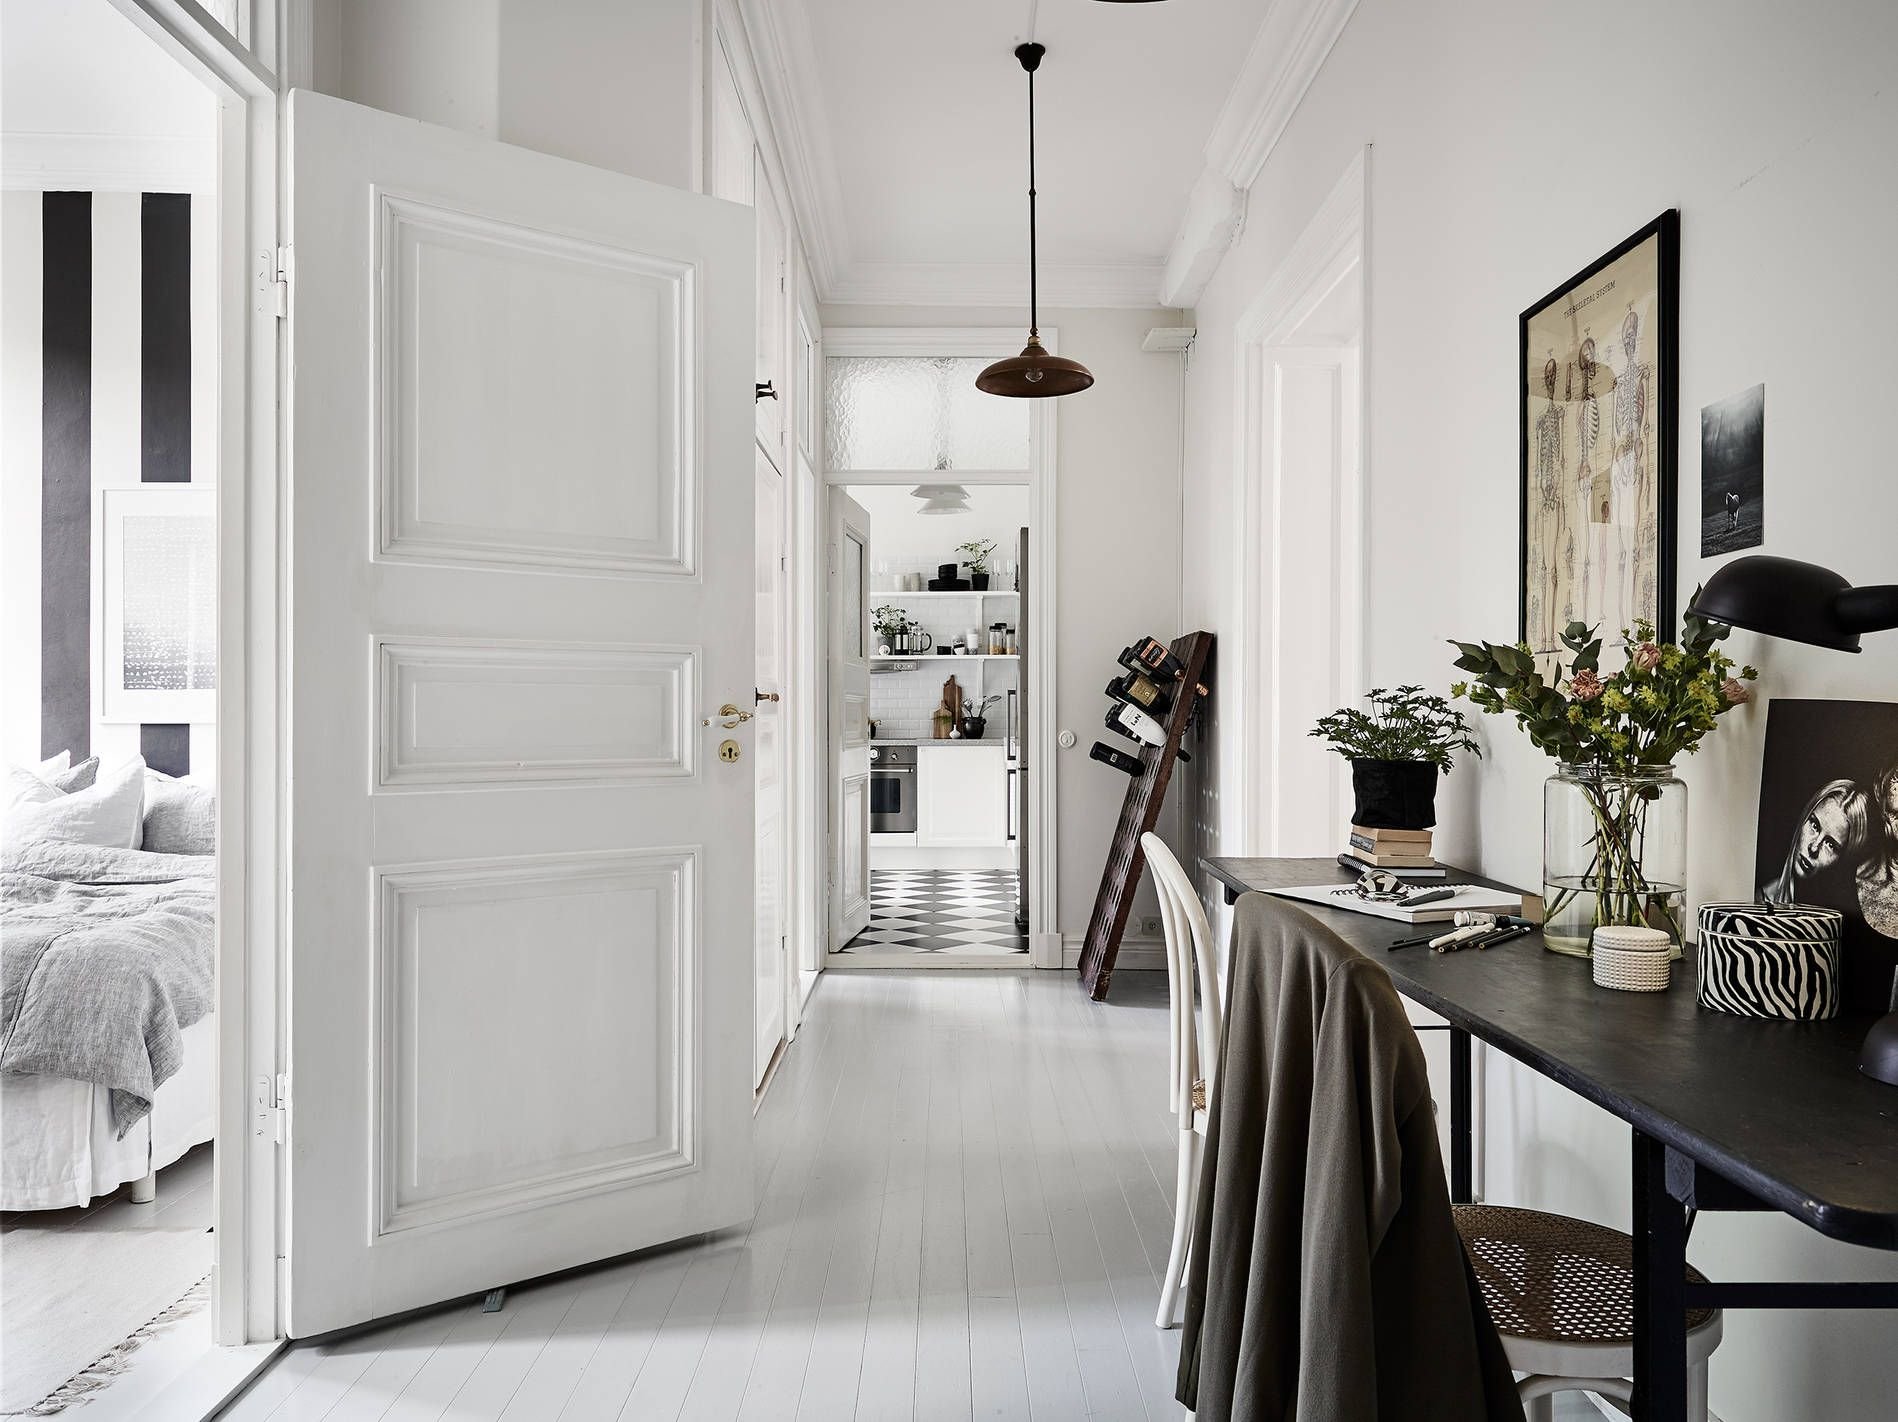 Двери в скандинавском стиле среди современных предметов интерьера